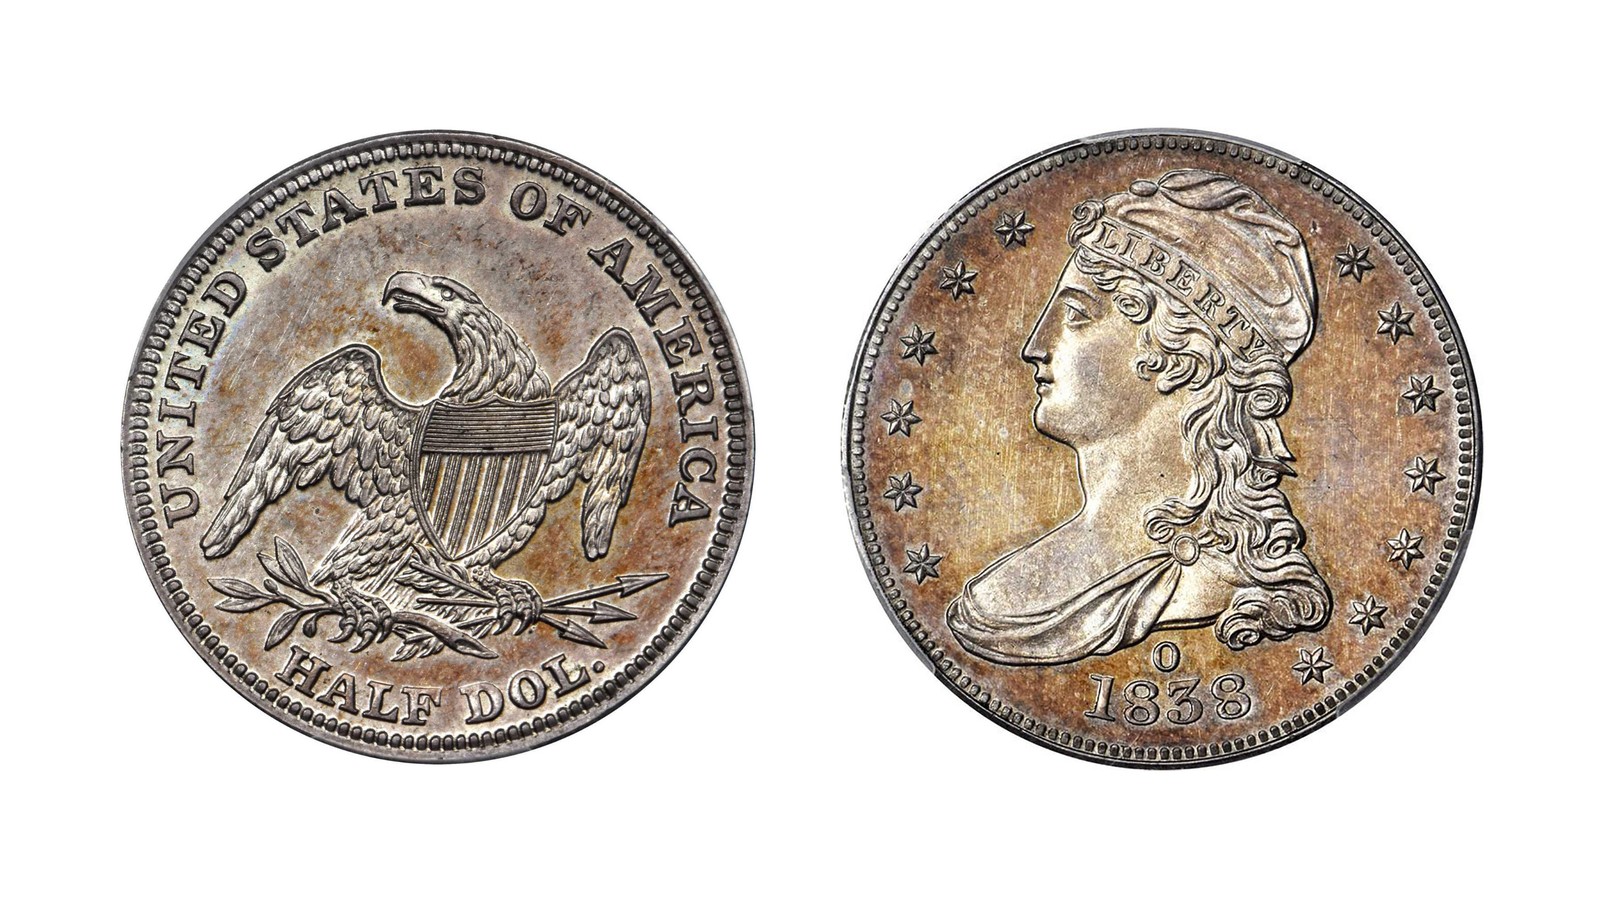 Rare Half Dollar Coin Sells For 504 000 Cnn Style